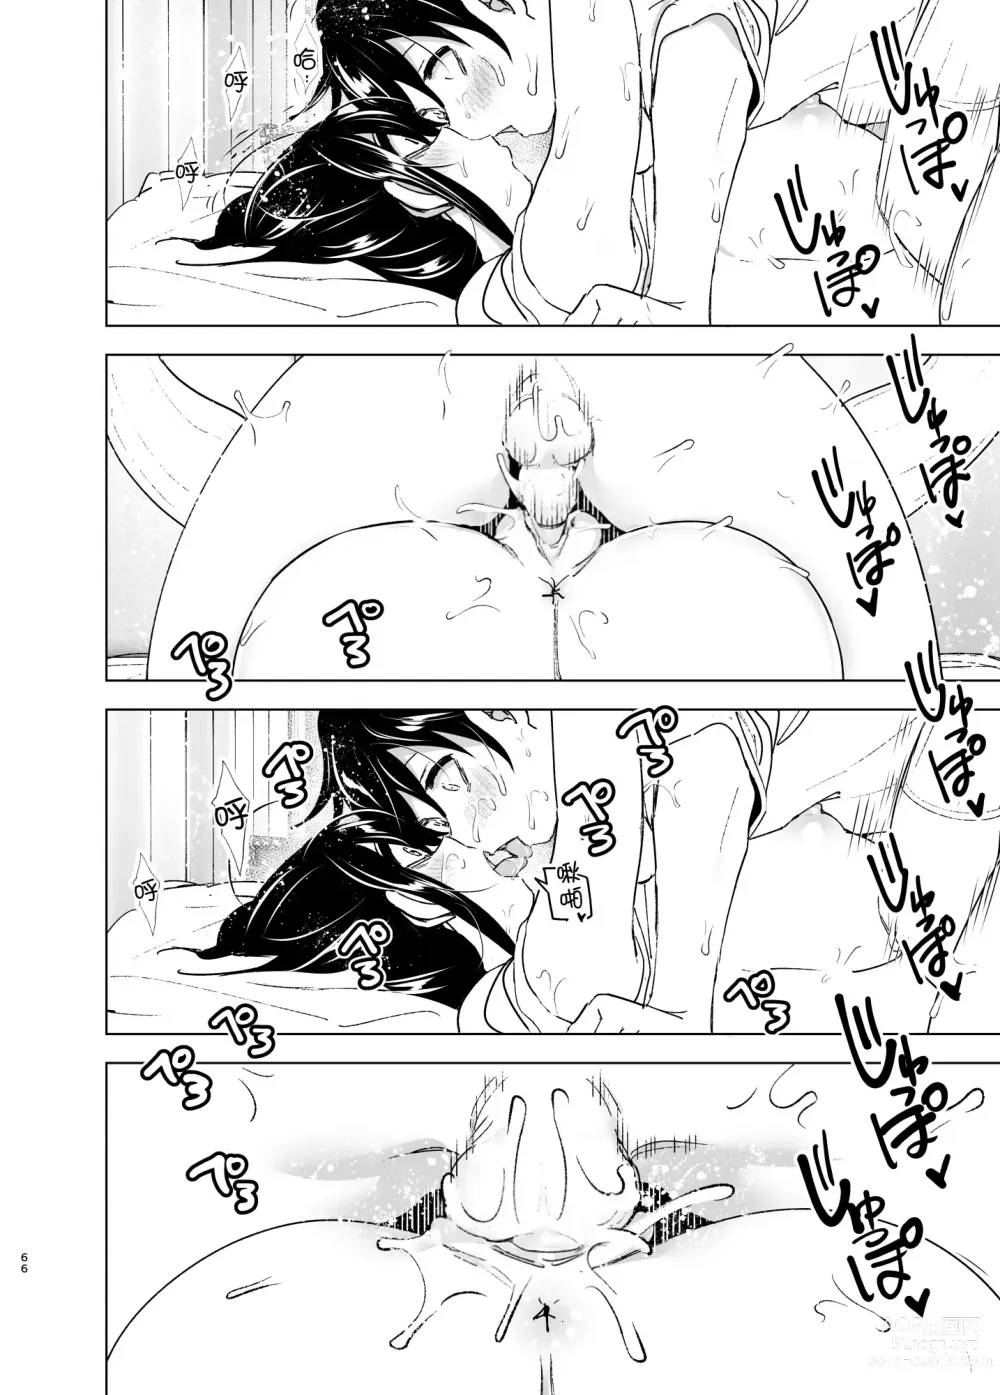 Page 65 of doujinshi 姐姐與傾聽抱怨的弟弟的故事 (decensored)